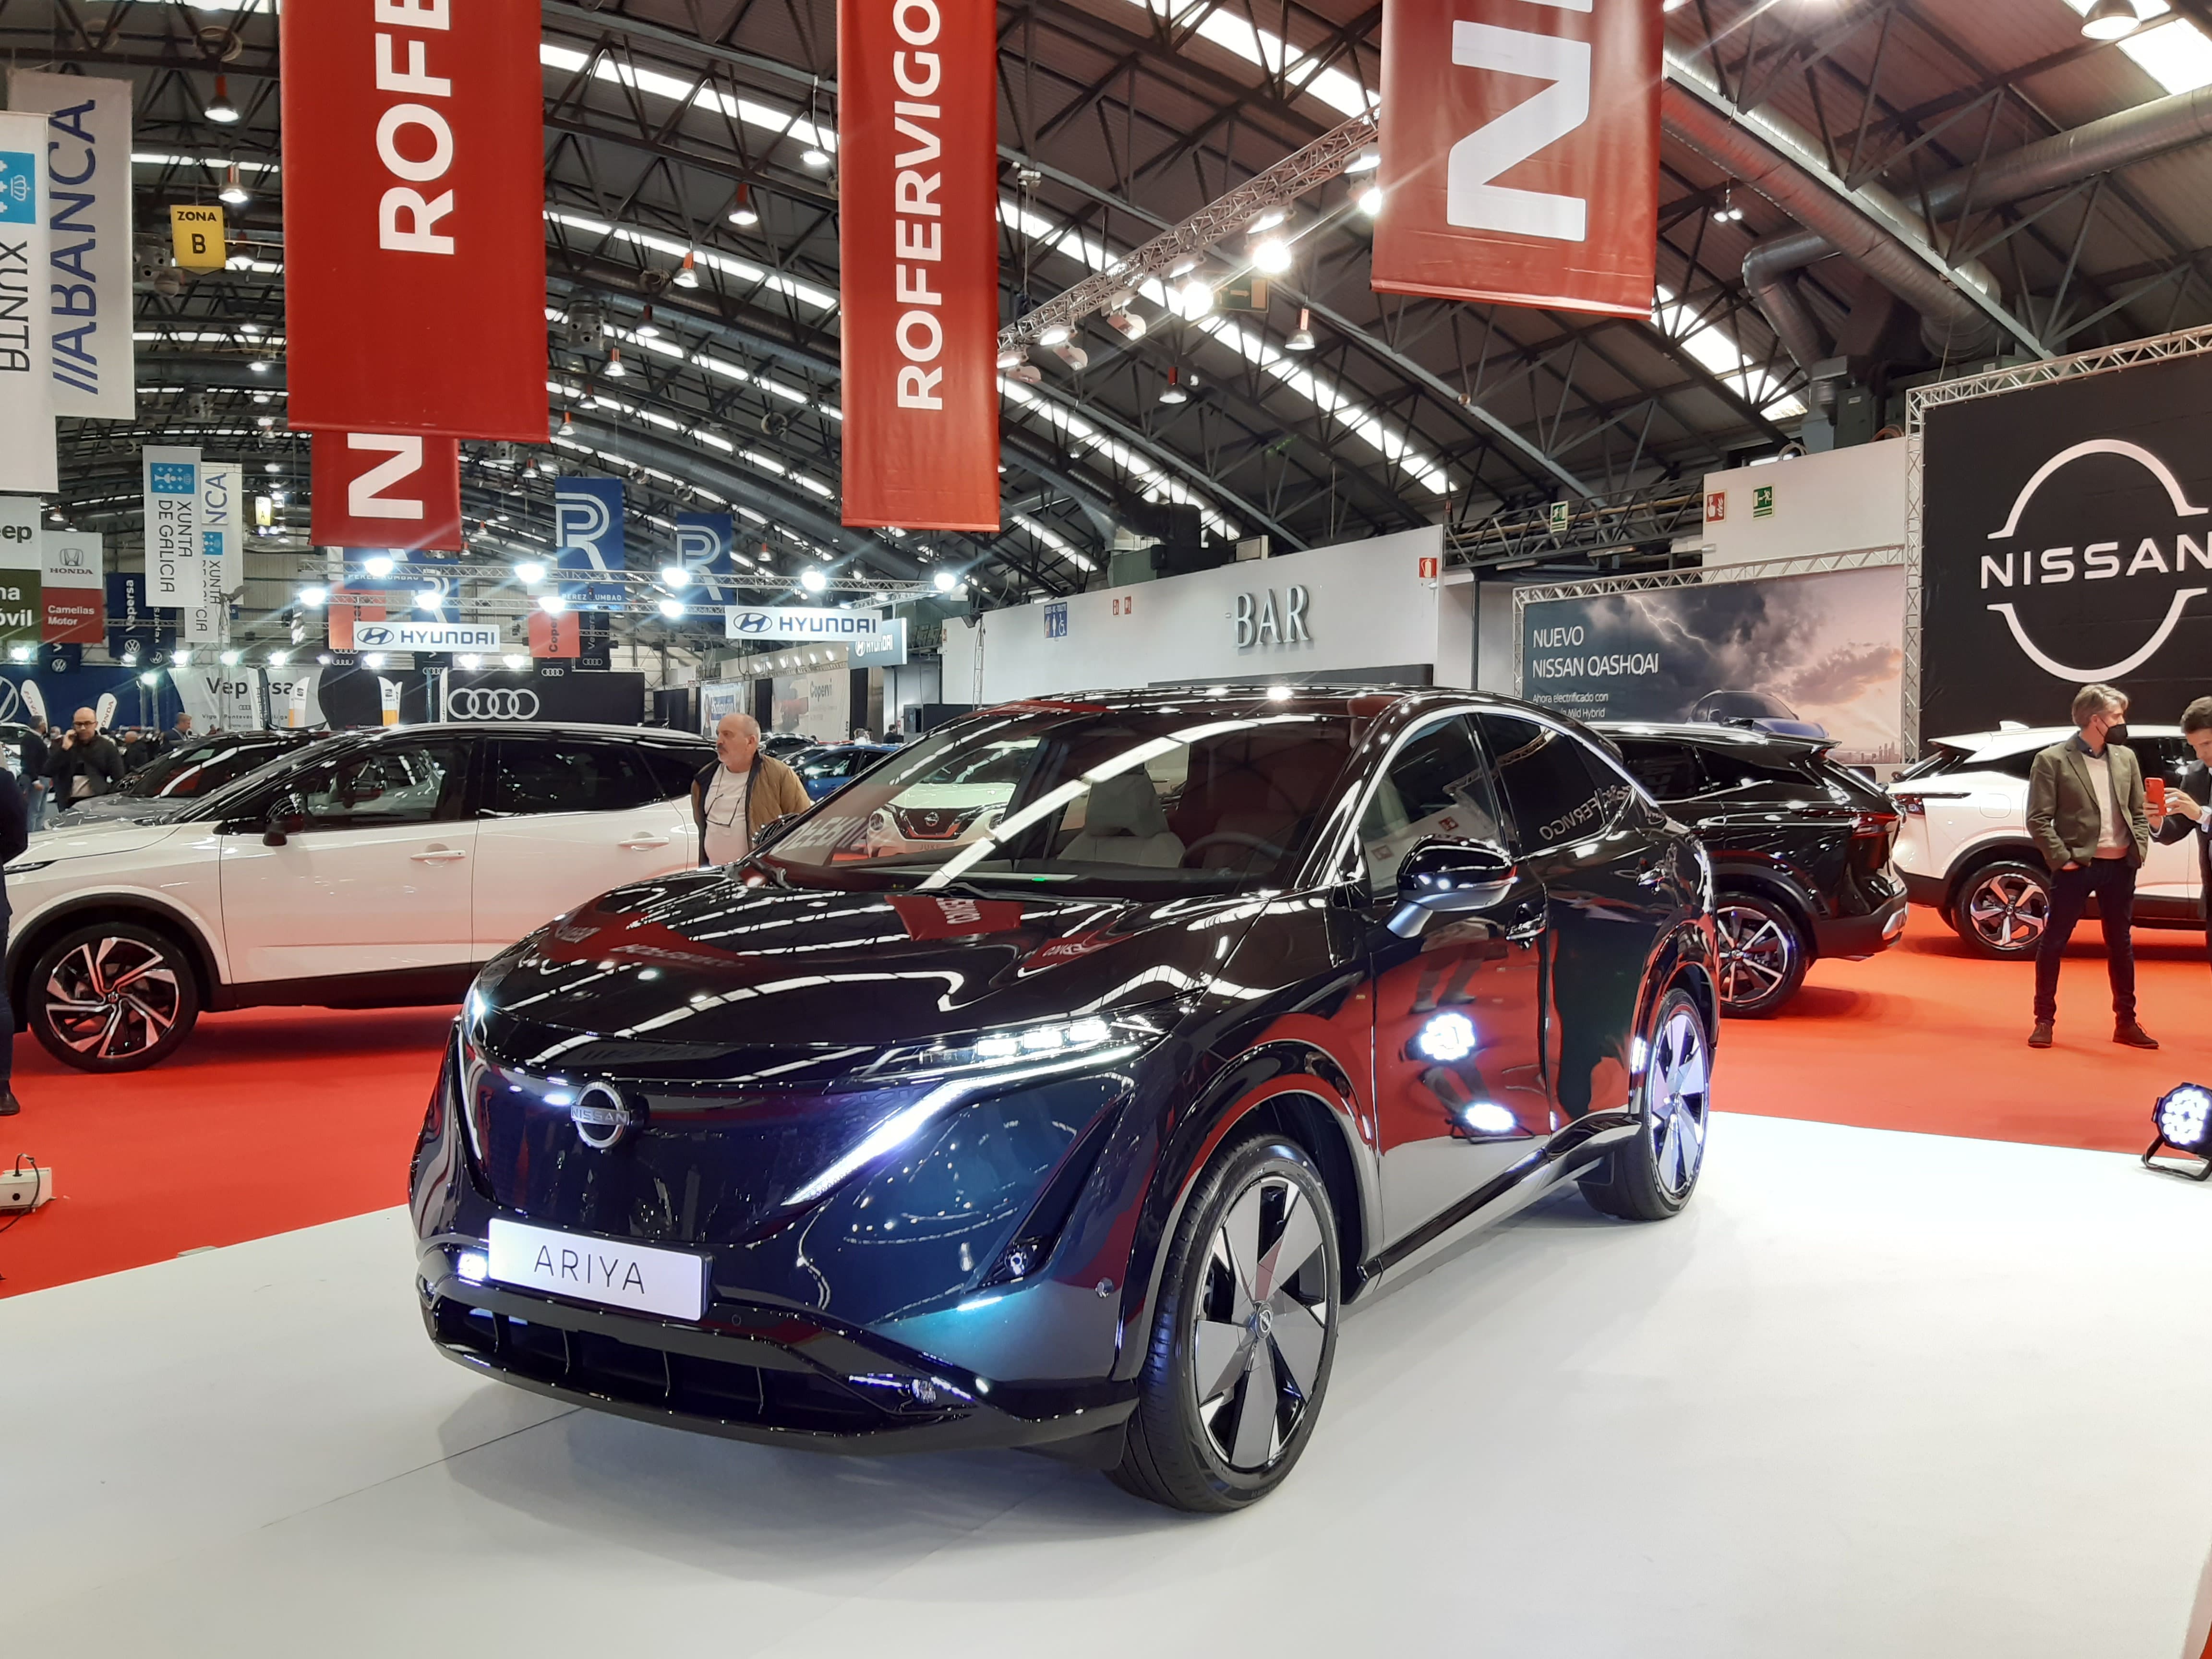 El Nuevo Nissan Ariya en el Salón del Automóvil de Vigo